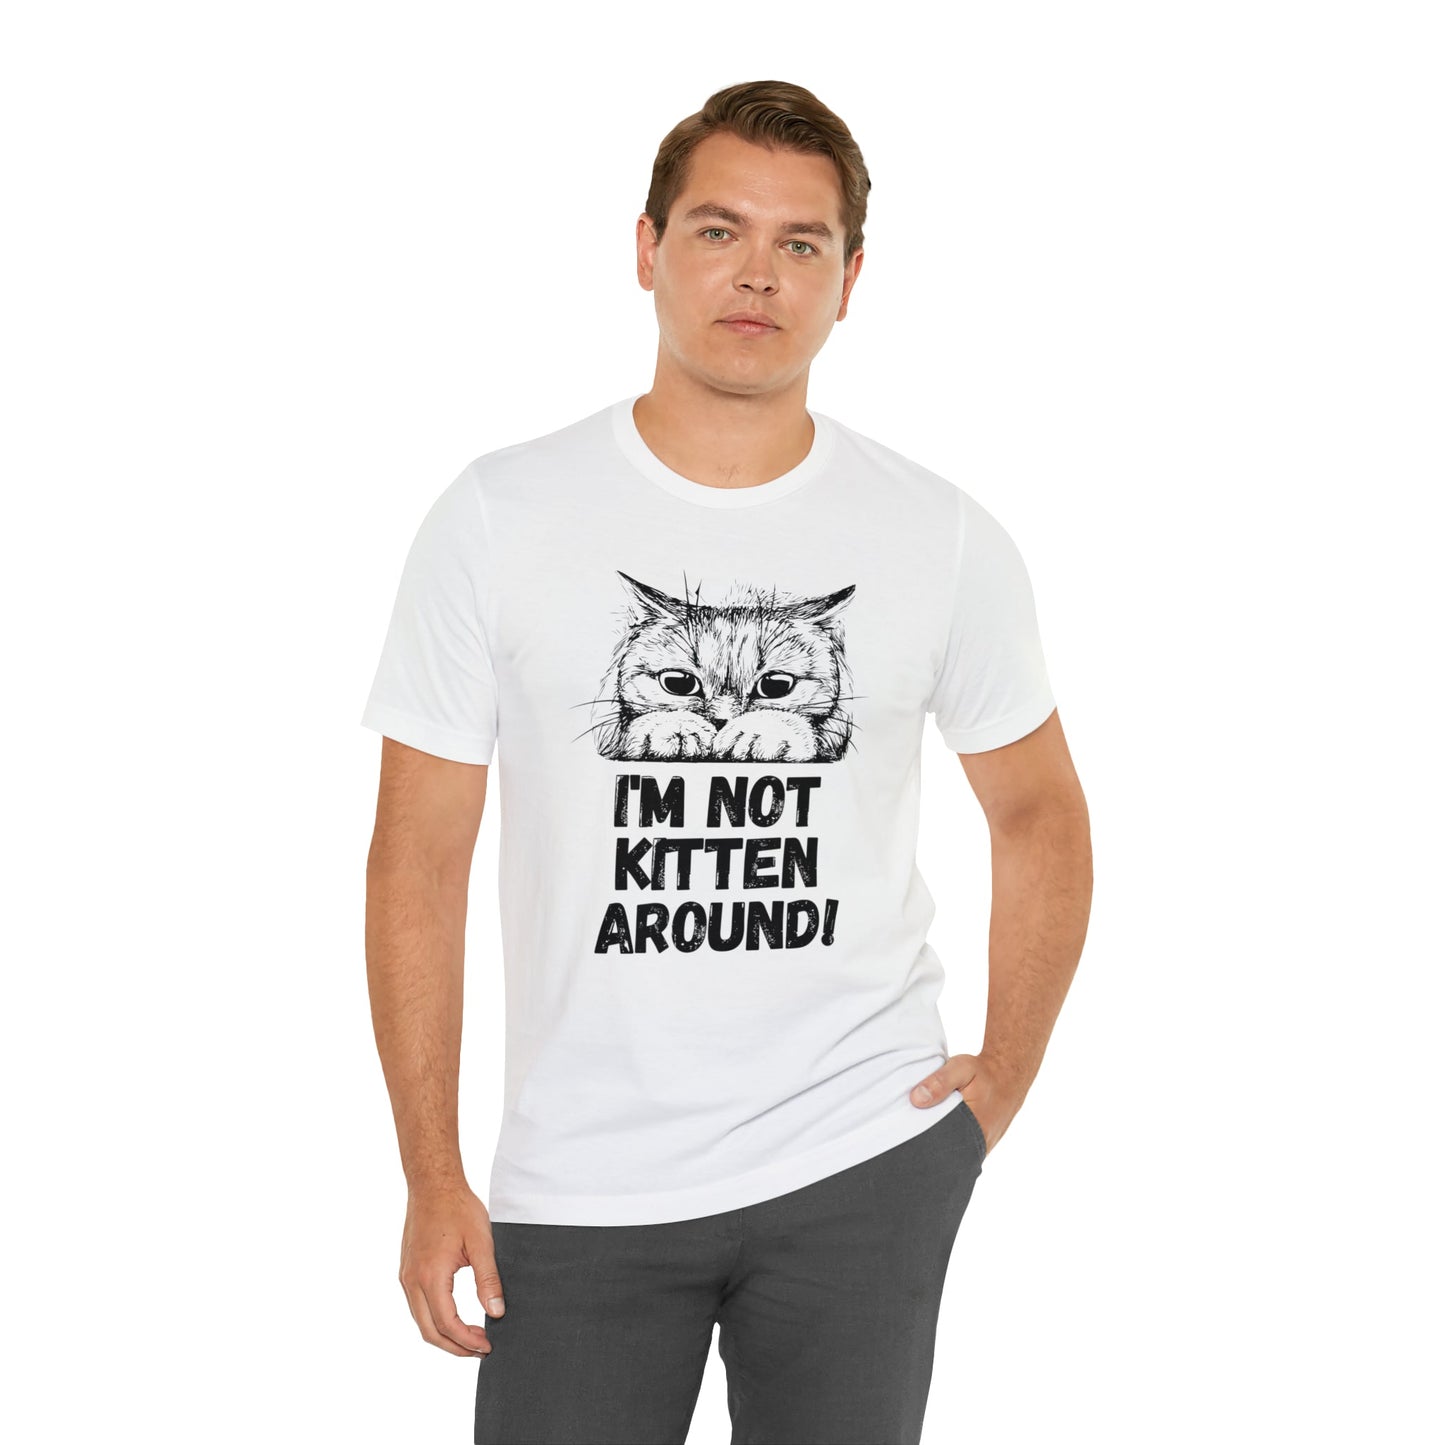 I'm Not Kitten Around! T-shirt. - InkArt Fashions